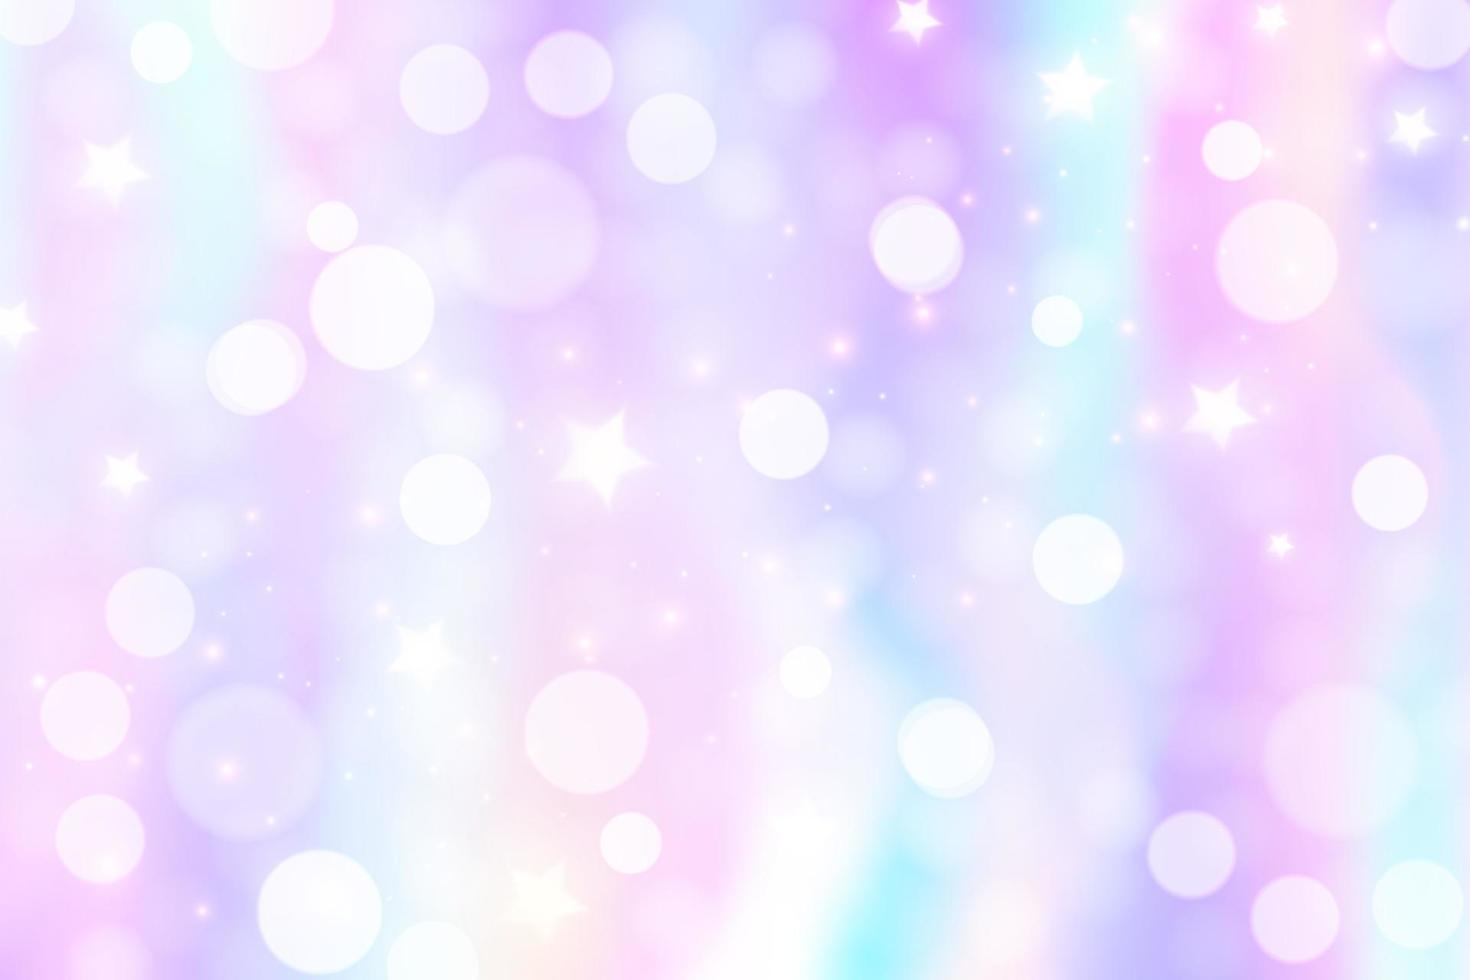 fundo de unicórnio arco-íris. céu de cor gradiente pastel com glitter e bokeh. espaço mágico da galáxia e estrelas. padrão abstrato de vetor. vetor